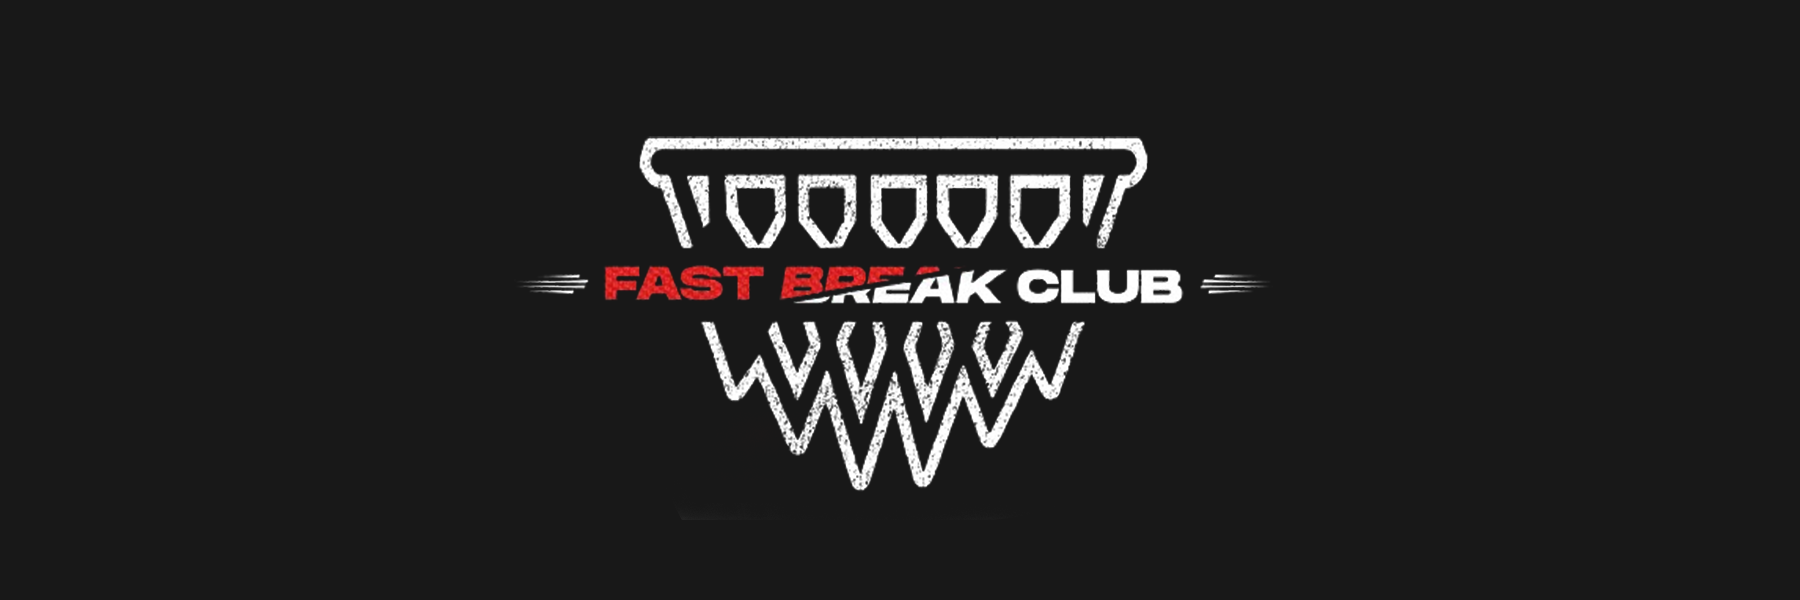 Fast break club icon